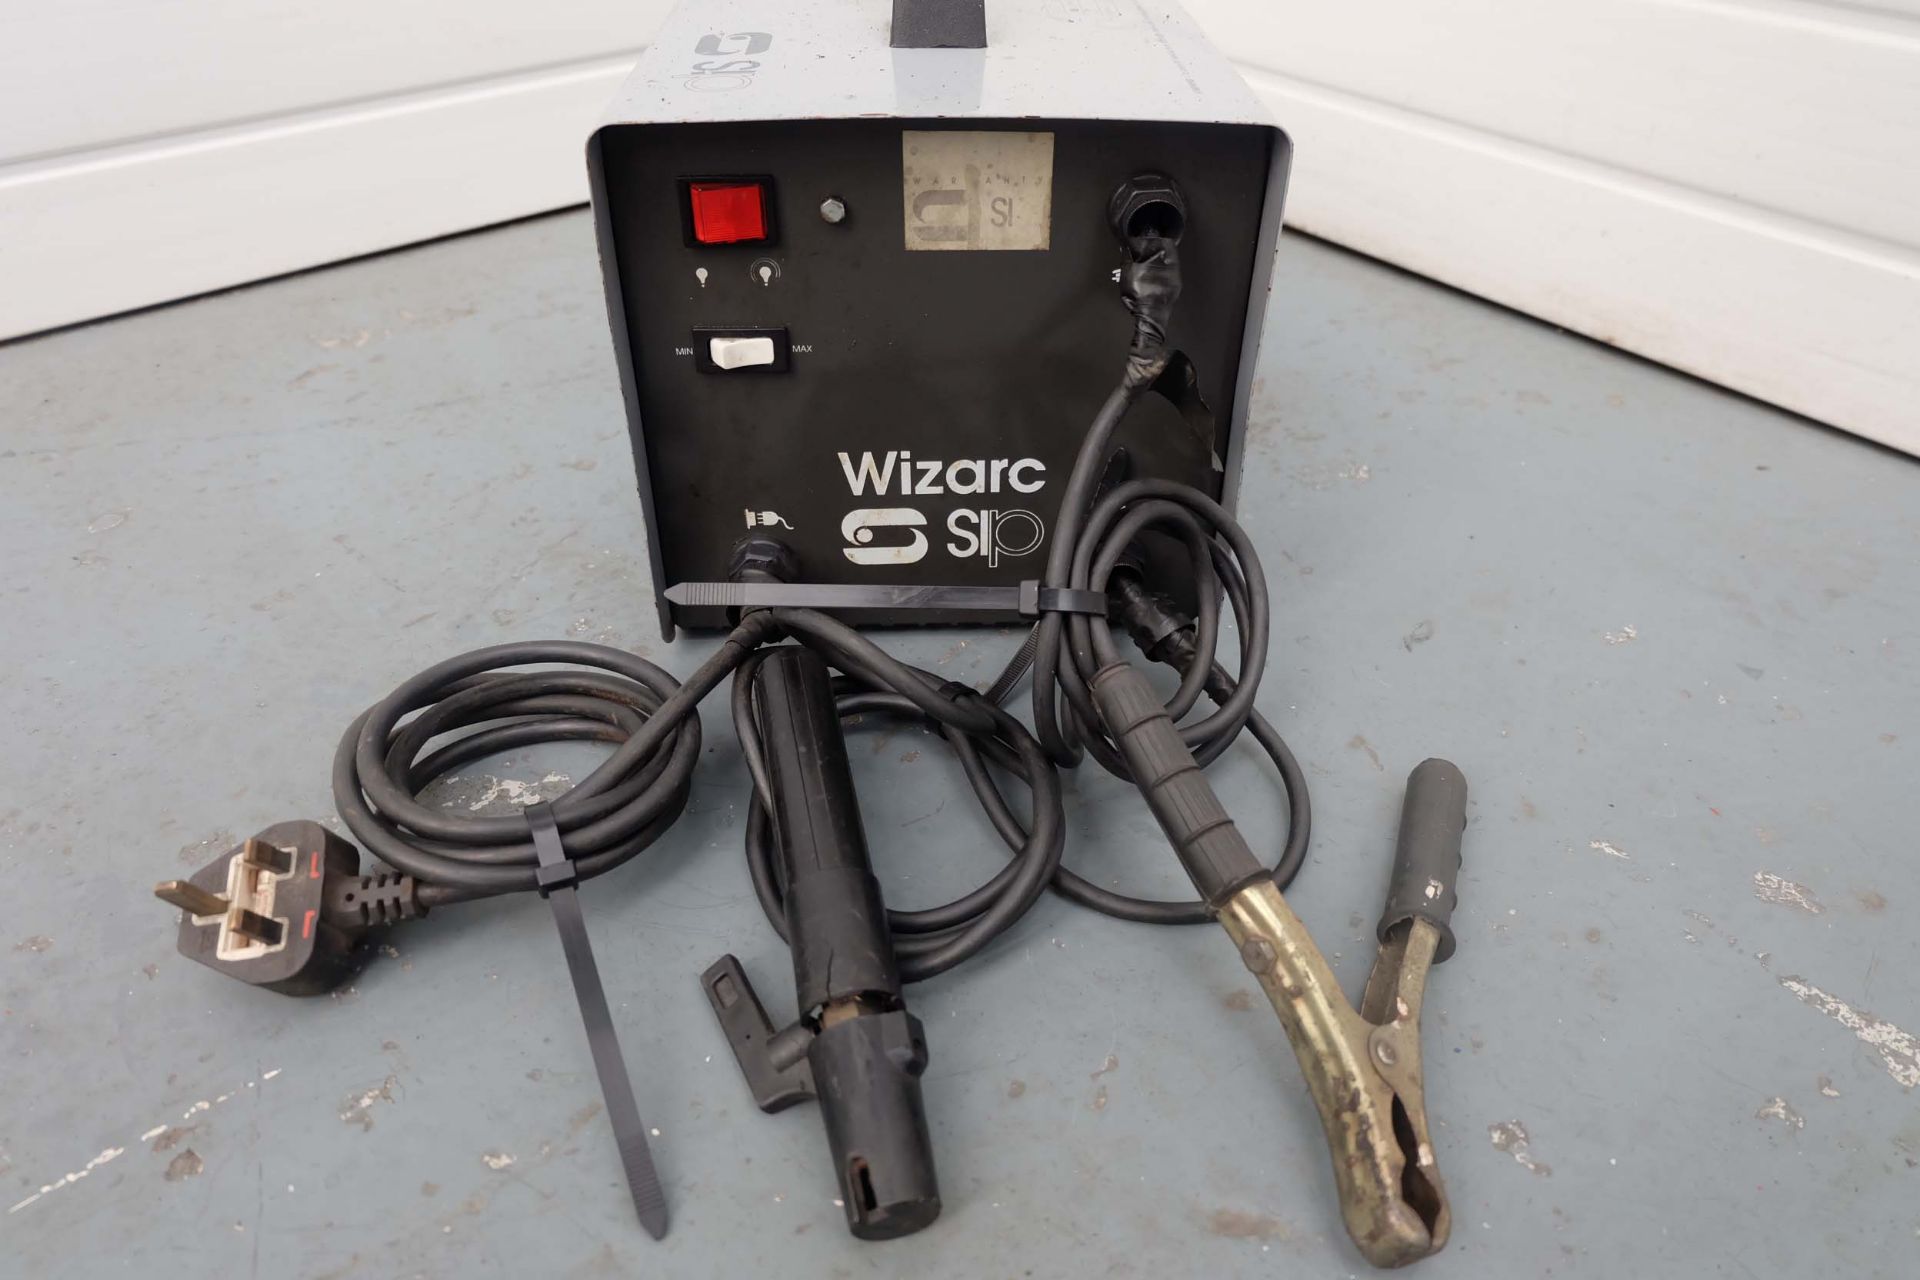 Wizarc Sip Arc Stick Welder. Single Phase 240V - 2KW. - Image 2 of 5